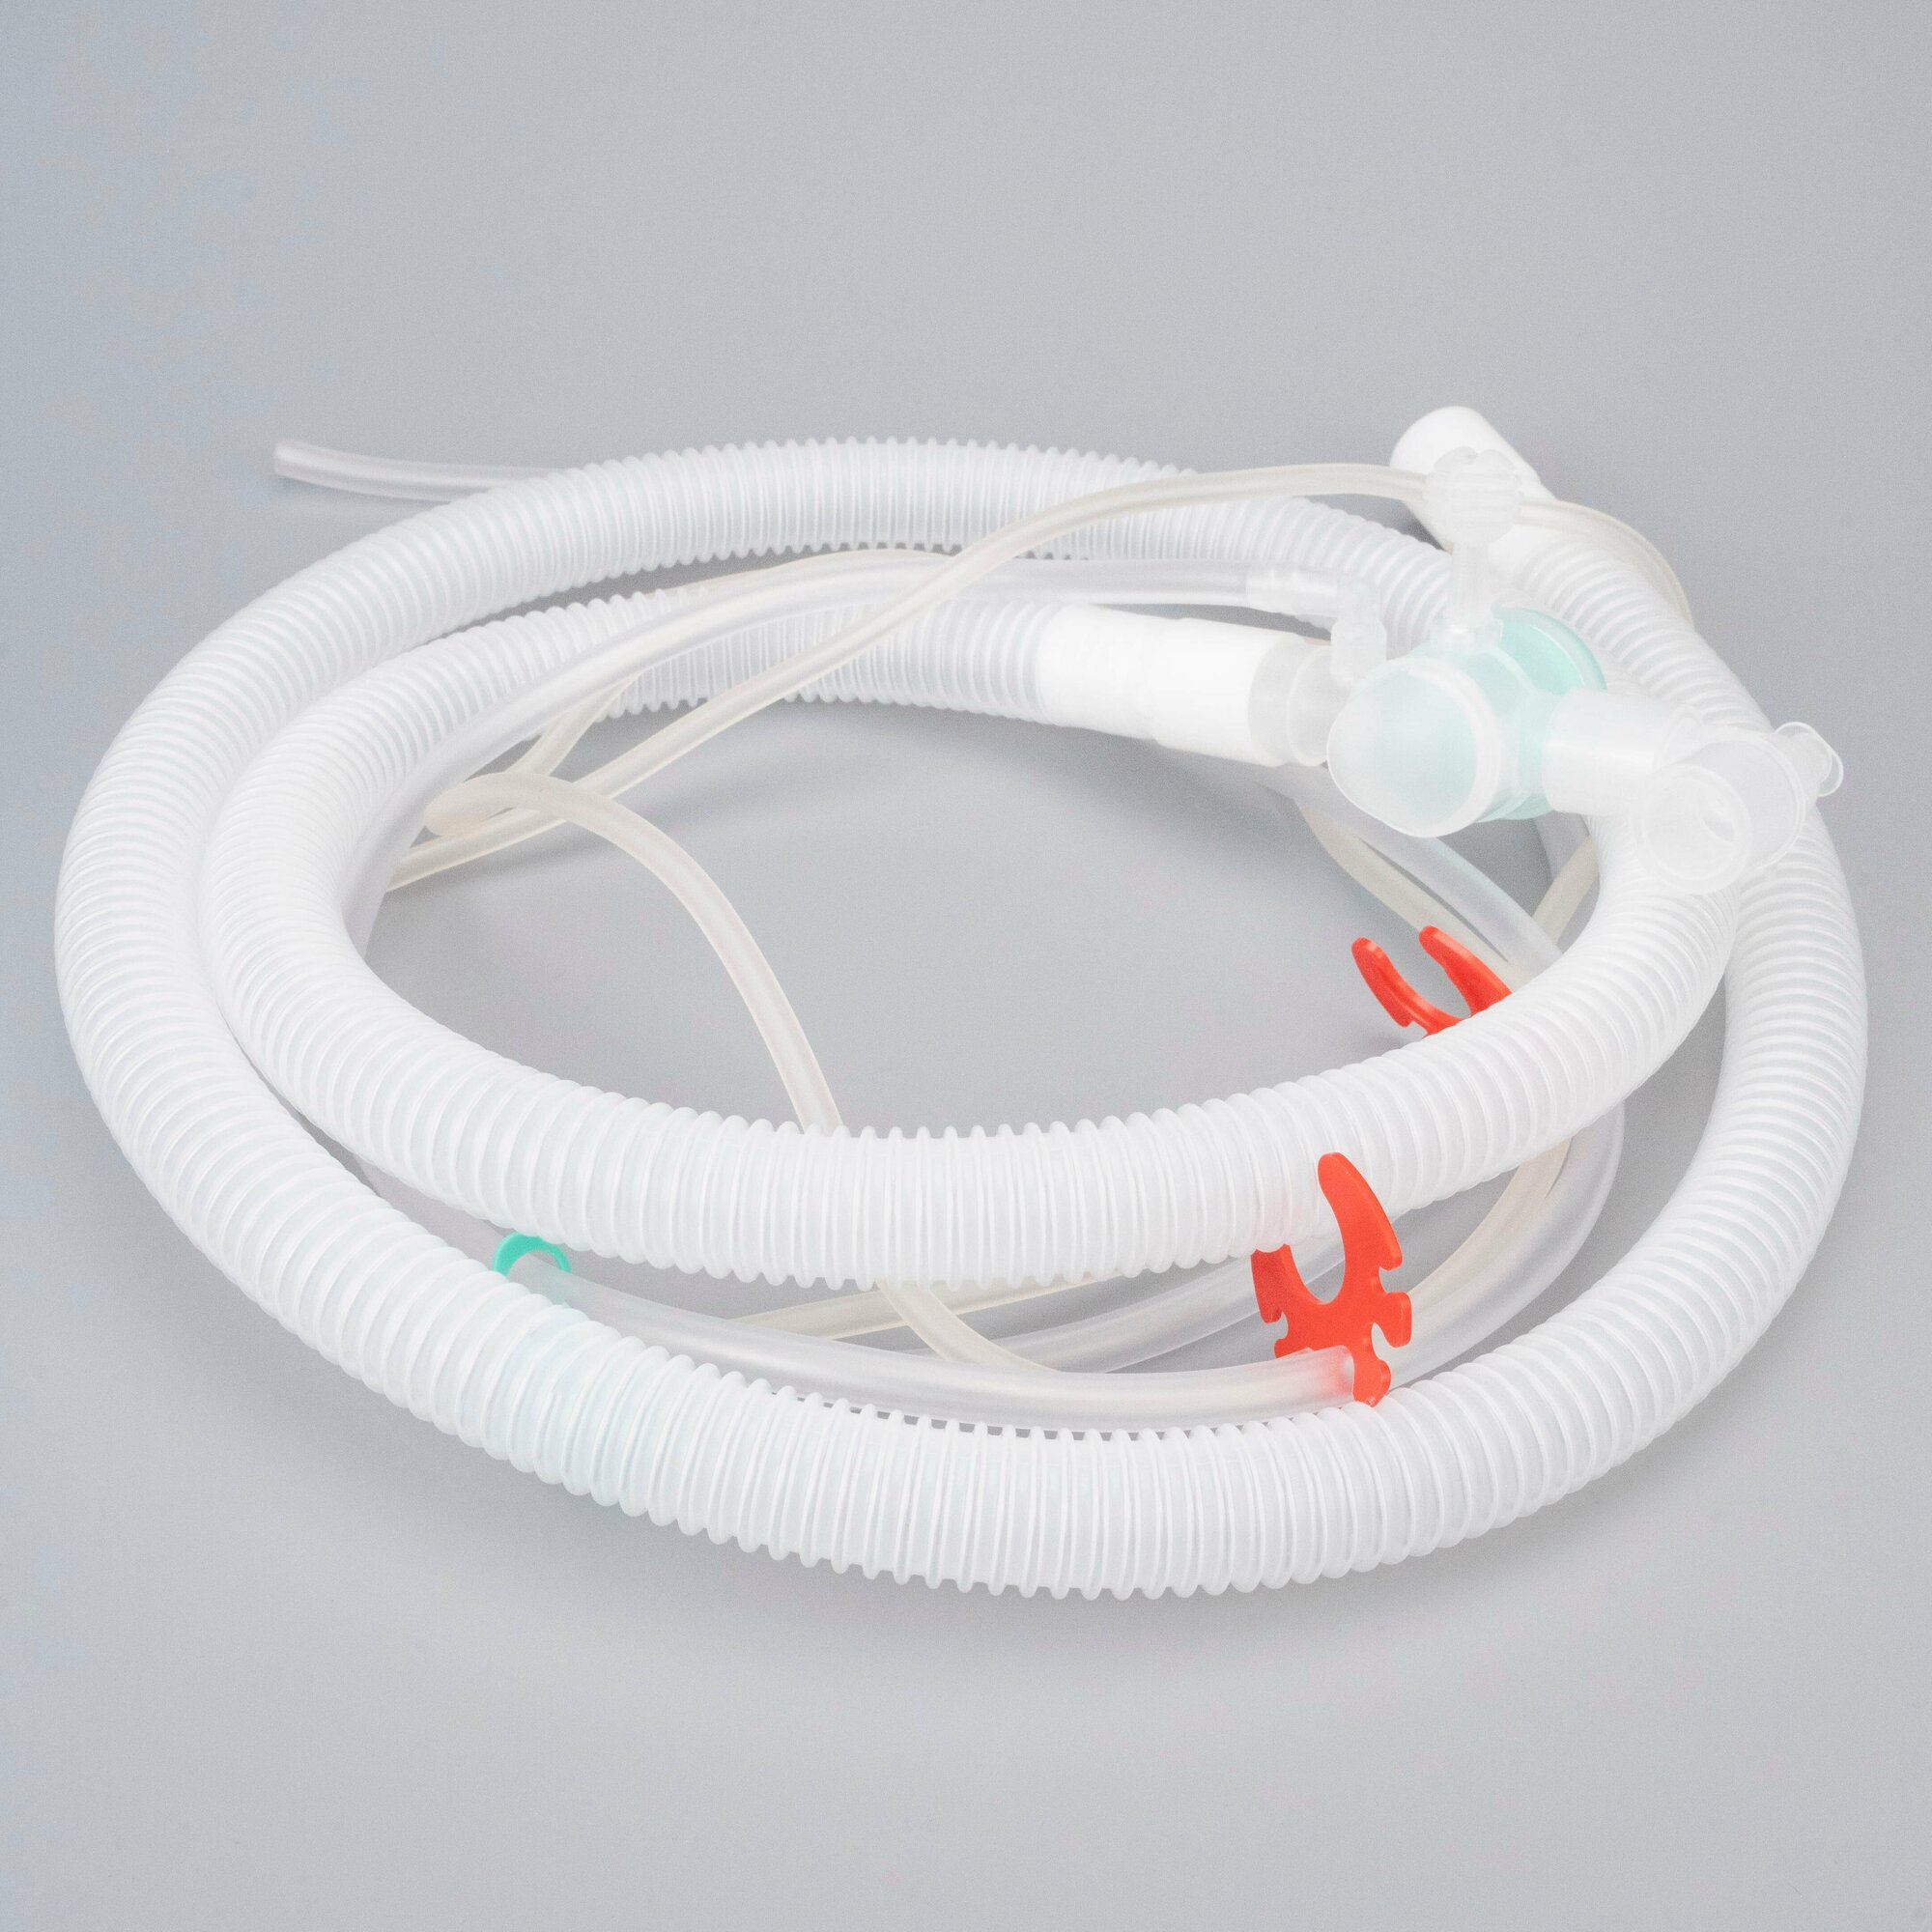 Контур дыхательный для ИВЛ с поддержкой дыхания, с перемежающим положительным давлением (IPPB) для аппарататов ИВЛ Дрегер Carina